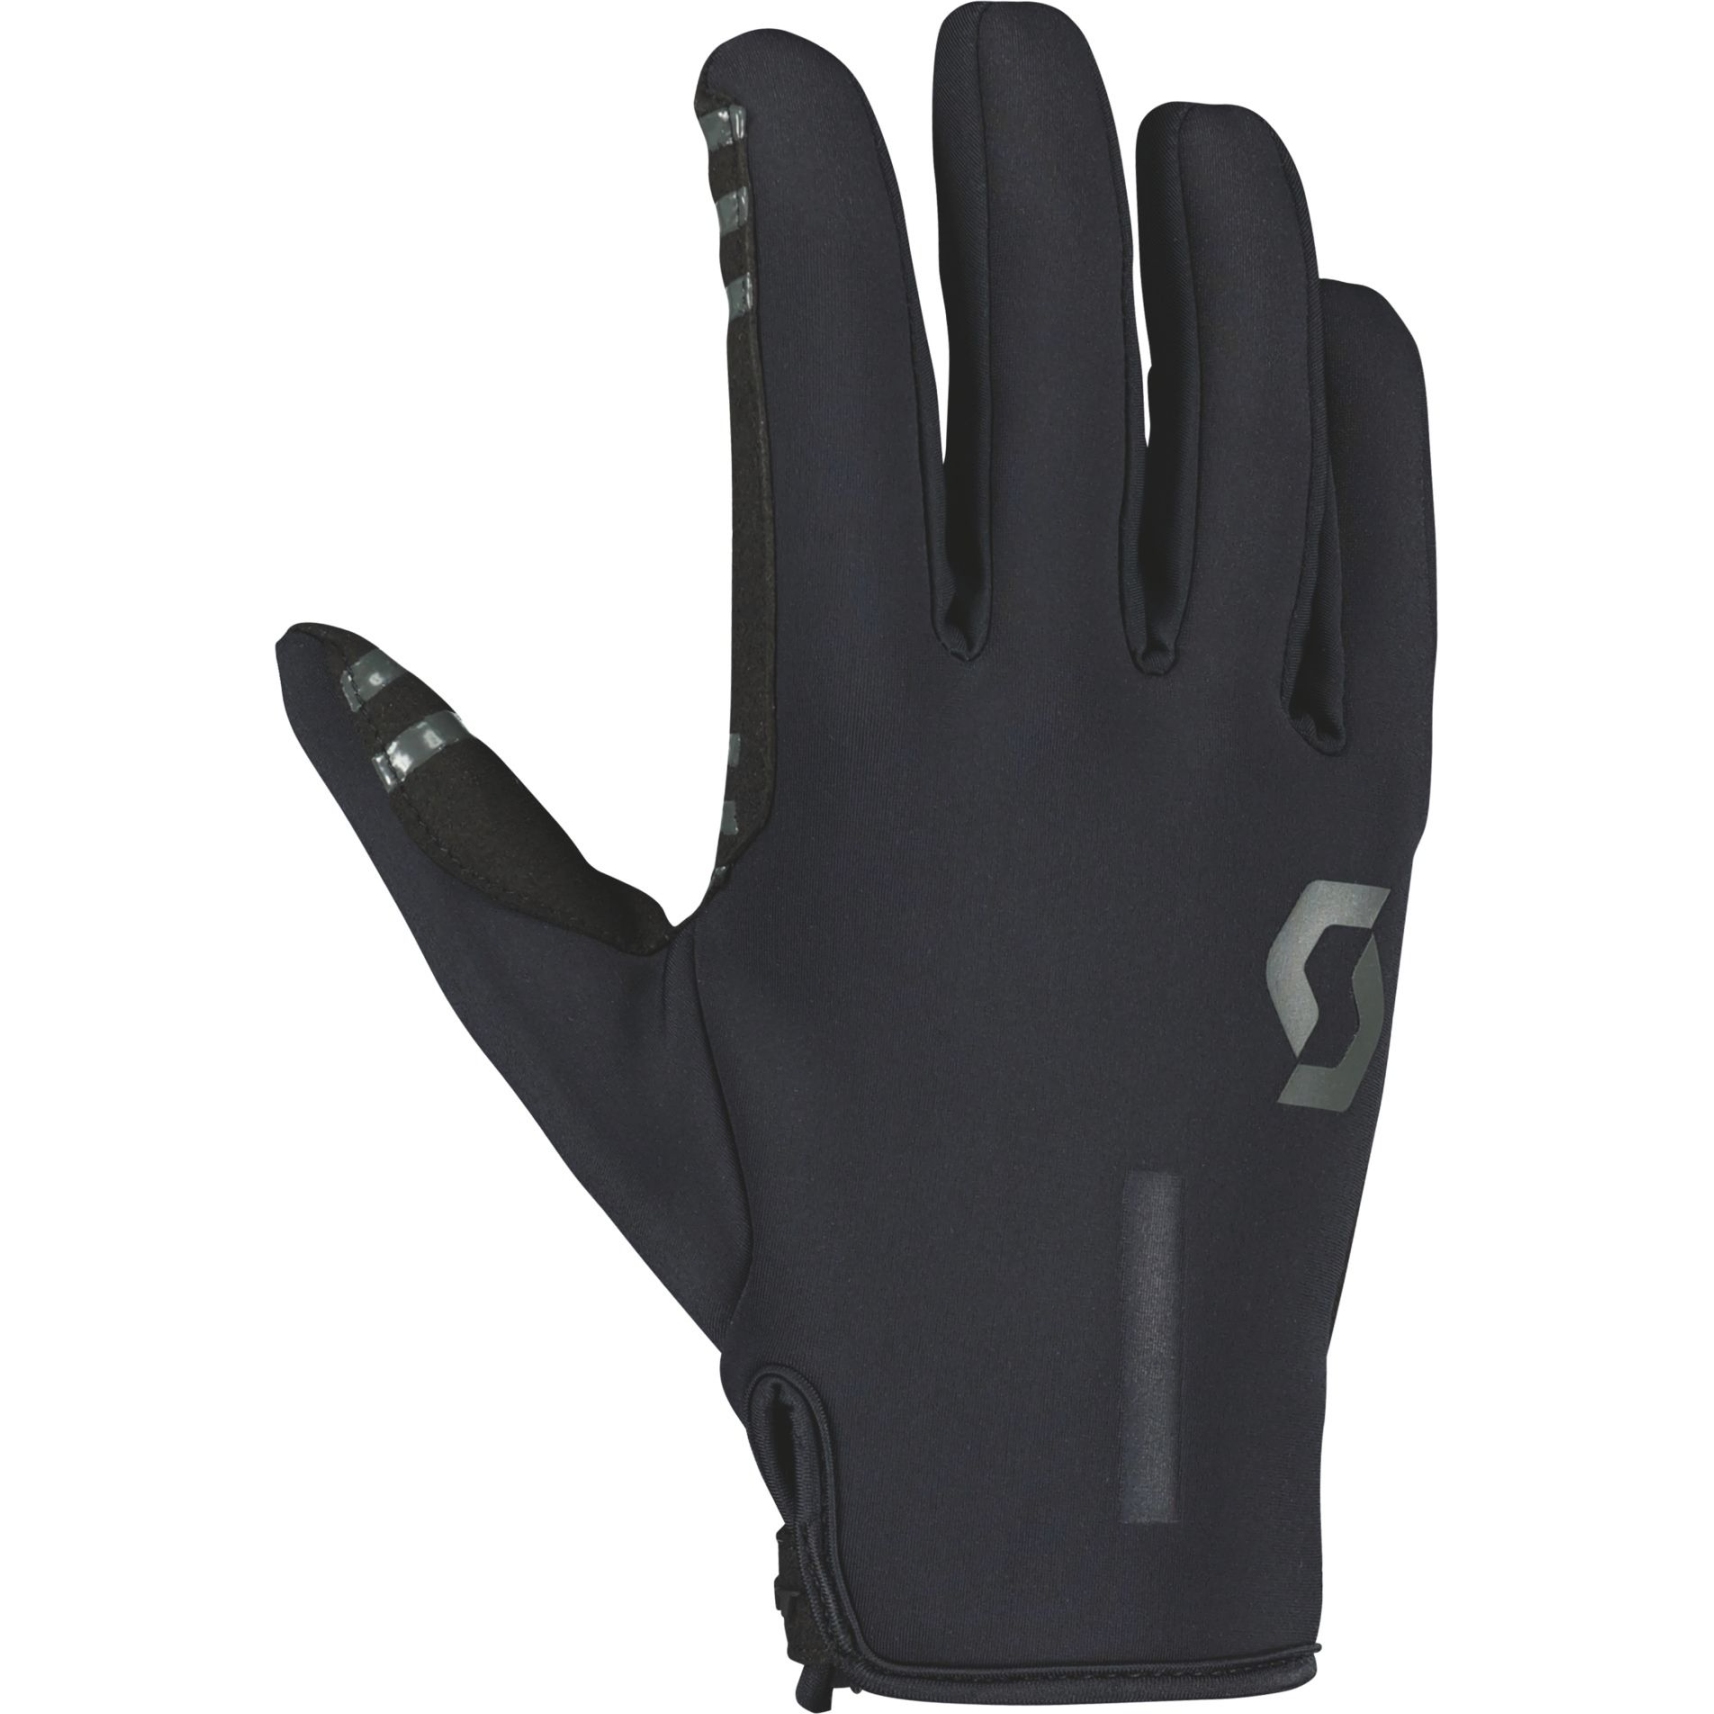 Produktbild von SCOTT Neoride Handschuhe - schwarz